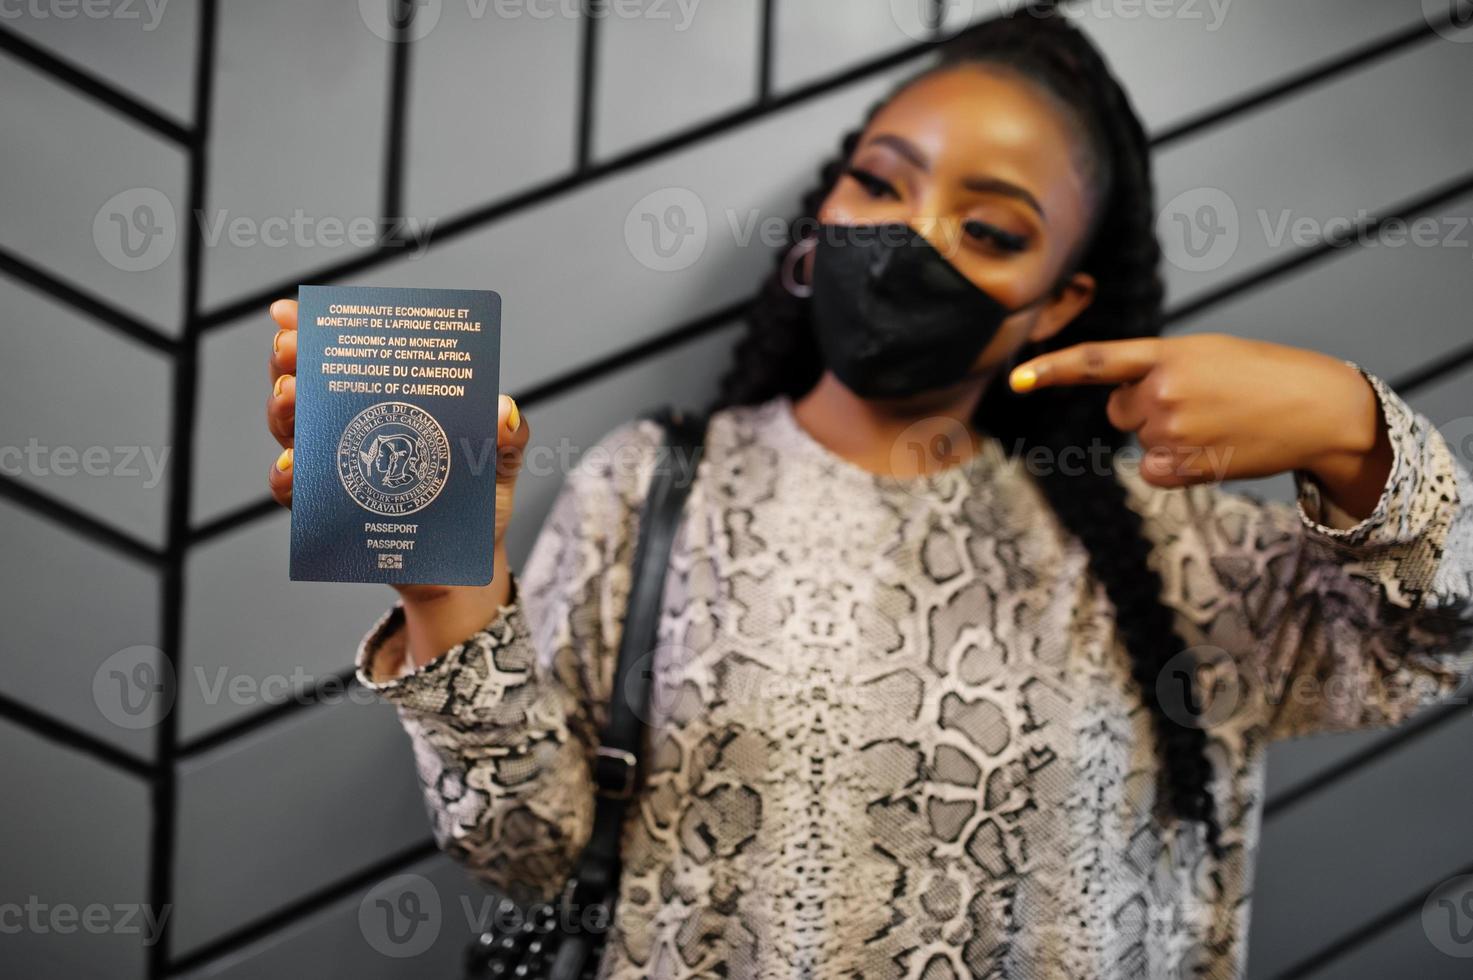 afrikanische frau mit schwarzer gesichtsmaske zeigt kamerun-pass in der hand. coronavirus in afrika land, grenzschließung und quarantäne, virusausbruchskonzept. foto